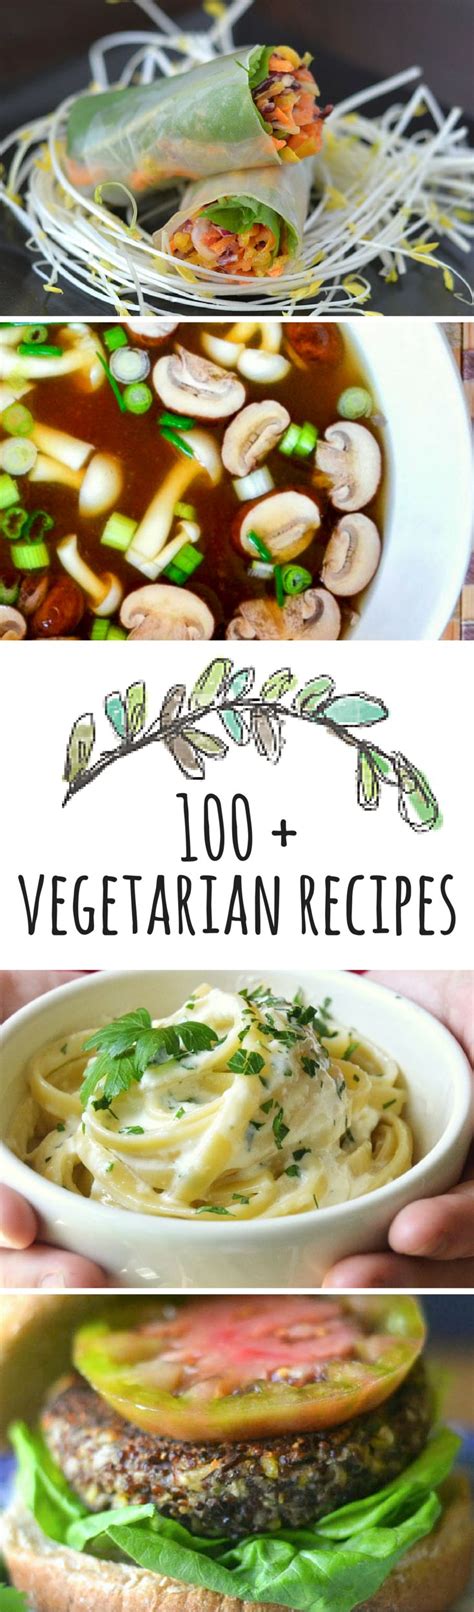 Lacto ovo vegetarian diet benefits downsides and meal plan. Lacto Ovo Vegetarian Dinner Recipes / The top 20 Ideas About Lacto Ovo Vegetarian Recipes - Best ...